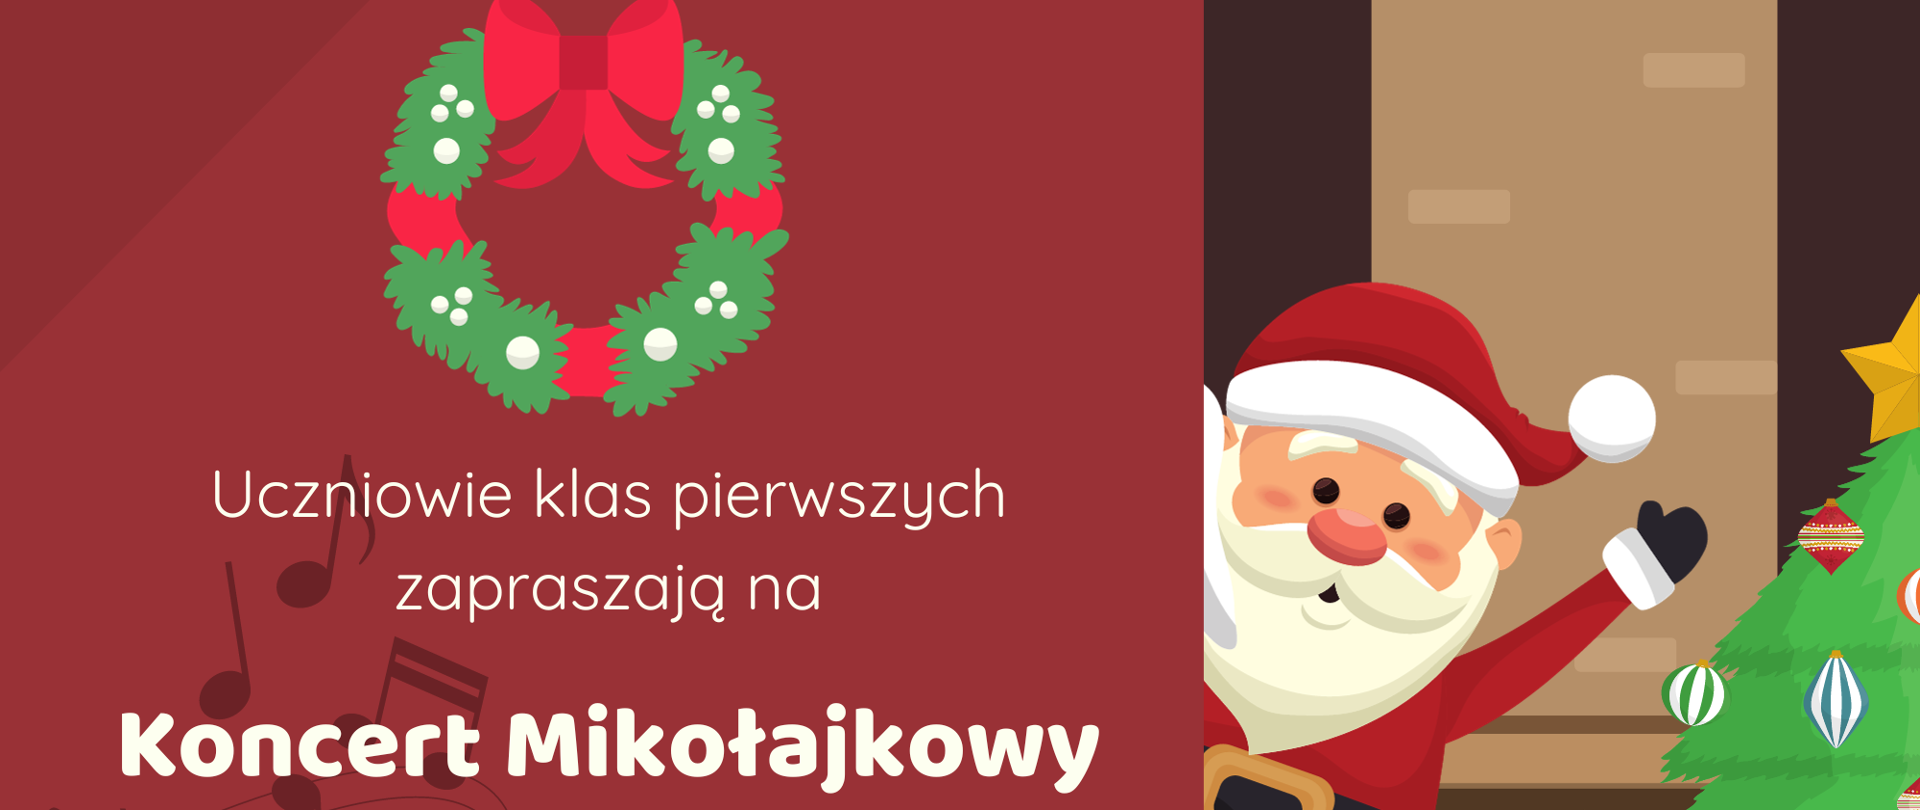 Plakat informujący o dacie i godzinie Koncertu Mikołajkowego.